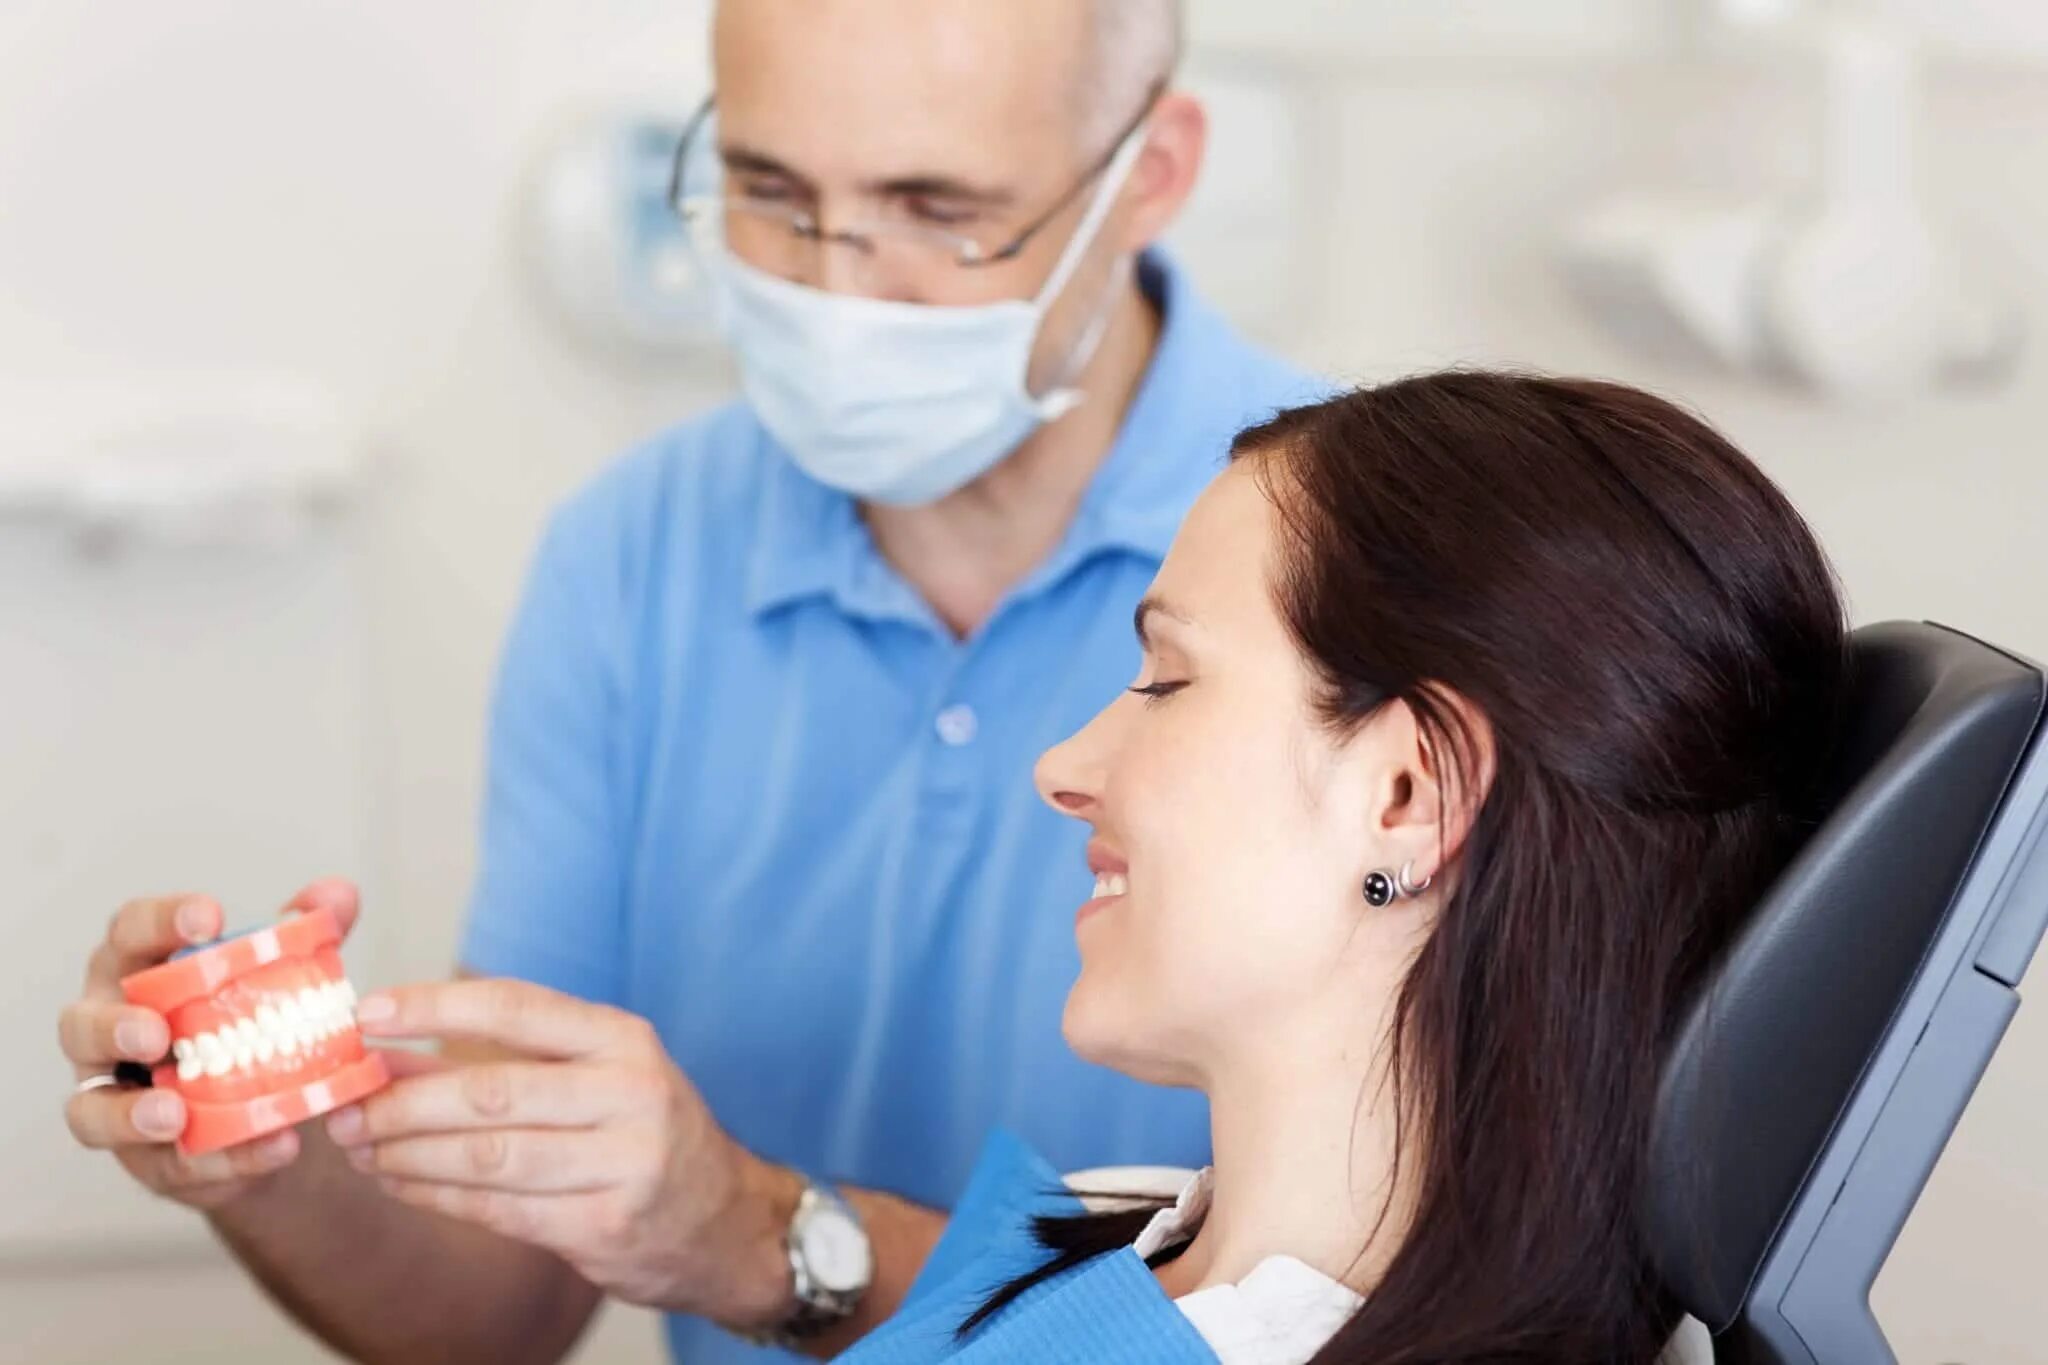 Стоматолог цена отзывы. Прием у стоматолога. Стоматолог и пациент. Консультация стоматолога. Обследование у стоматолога.